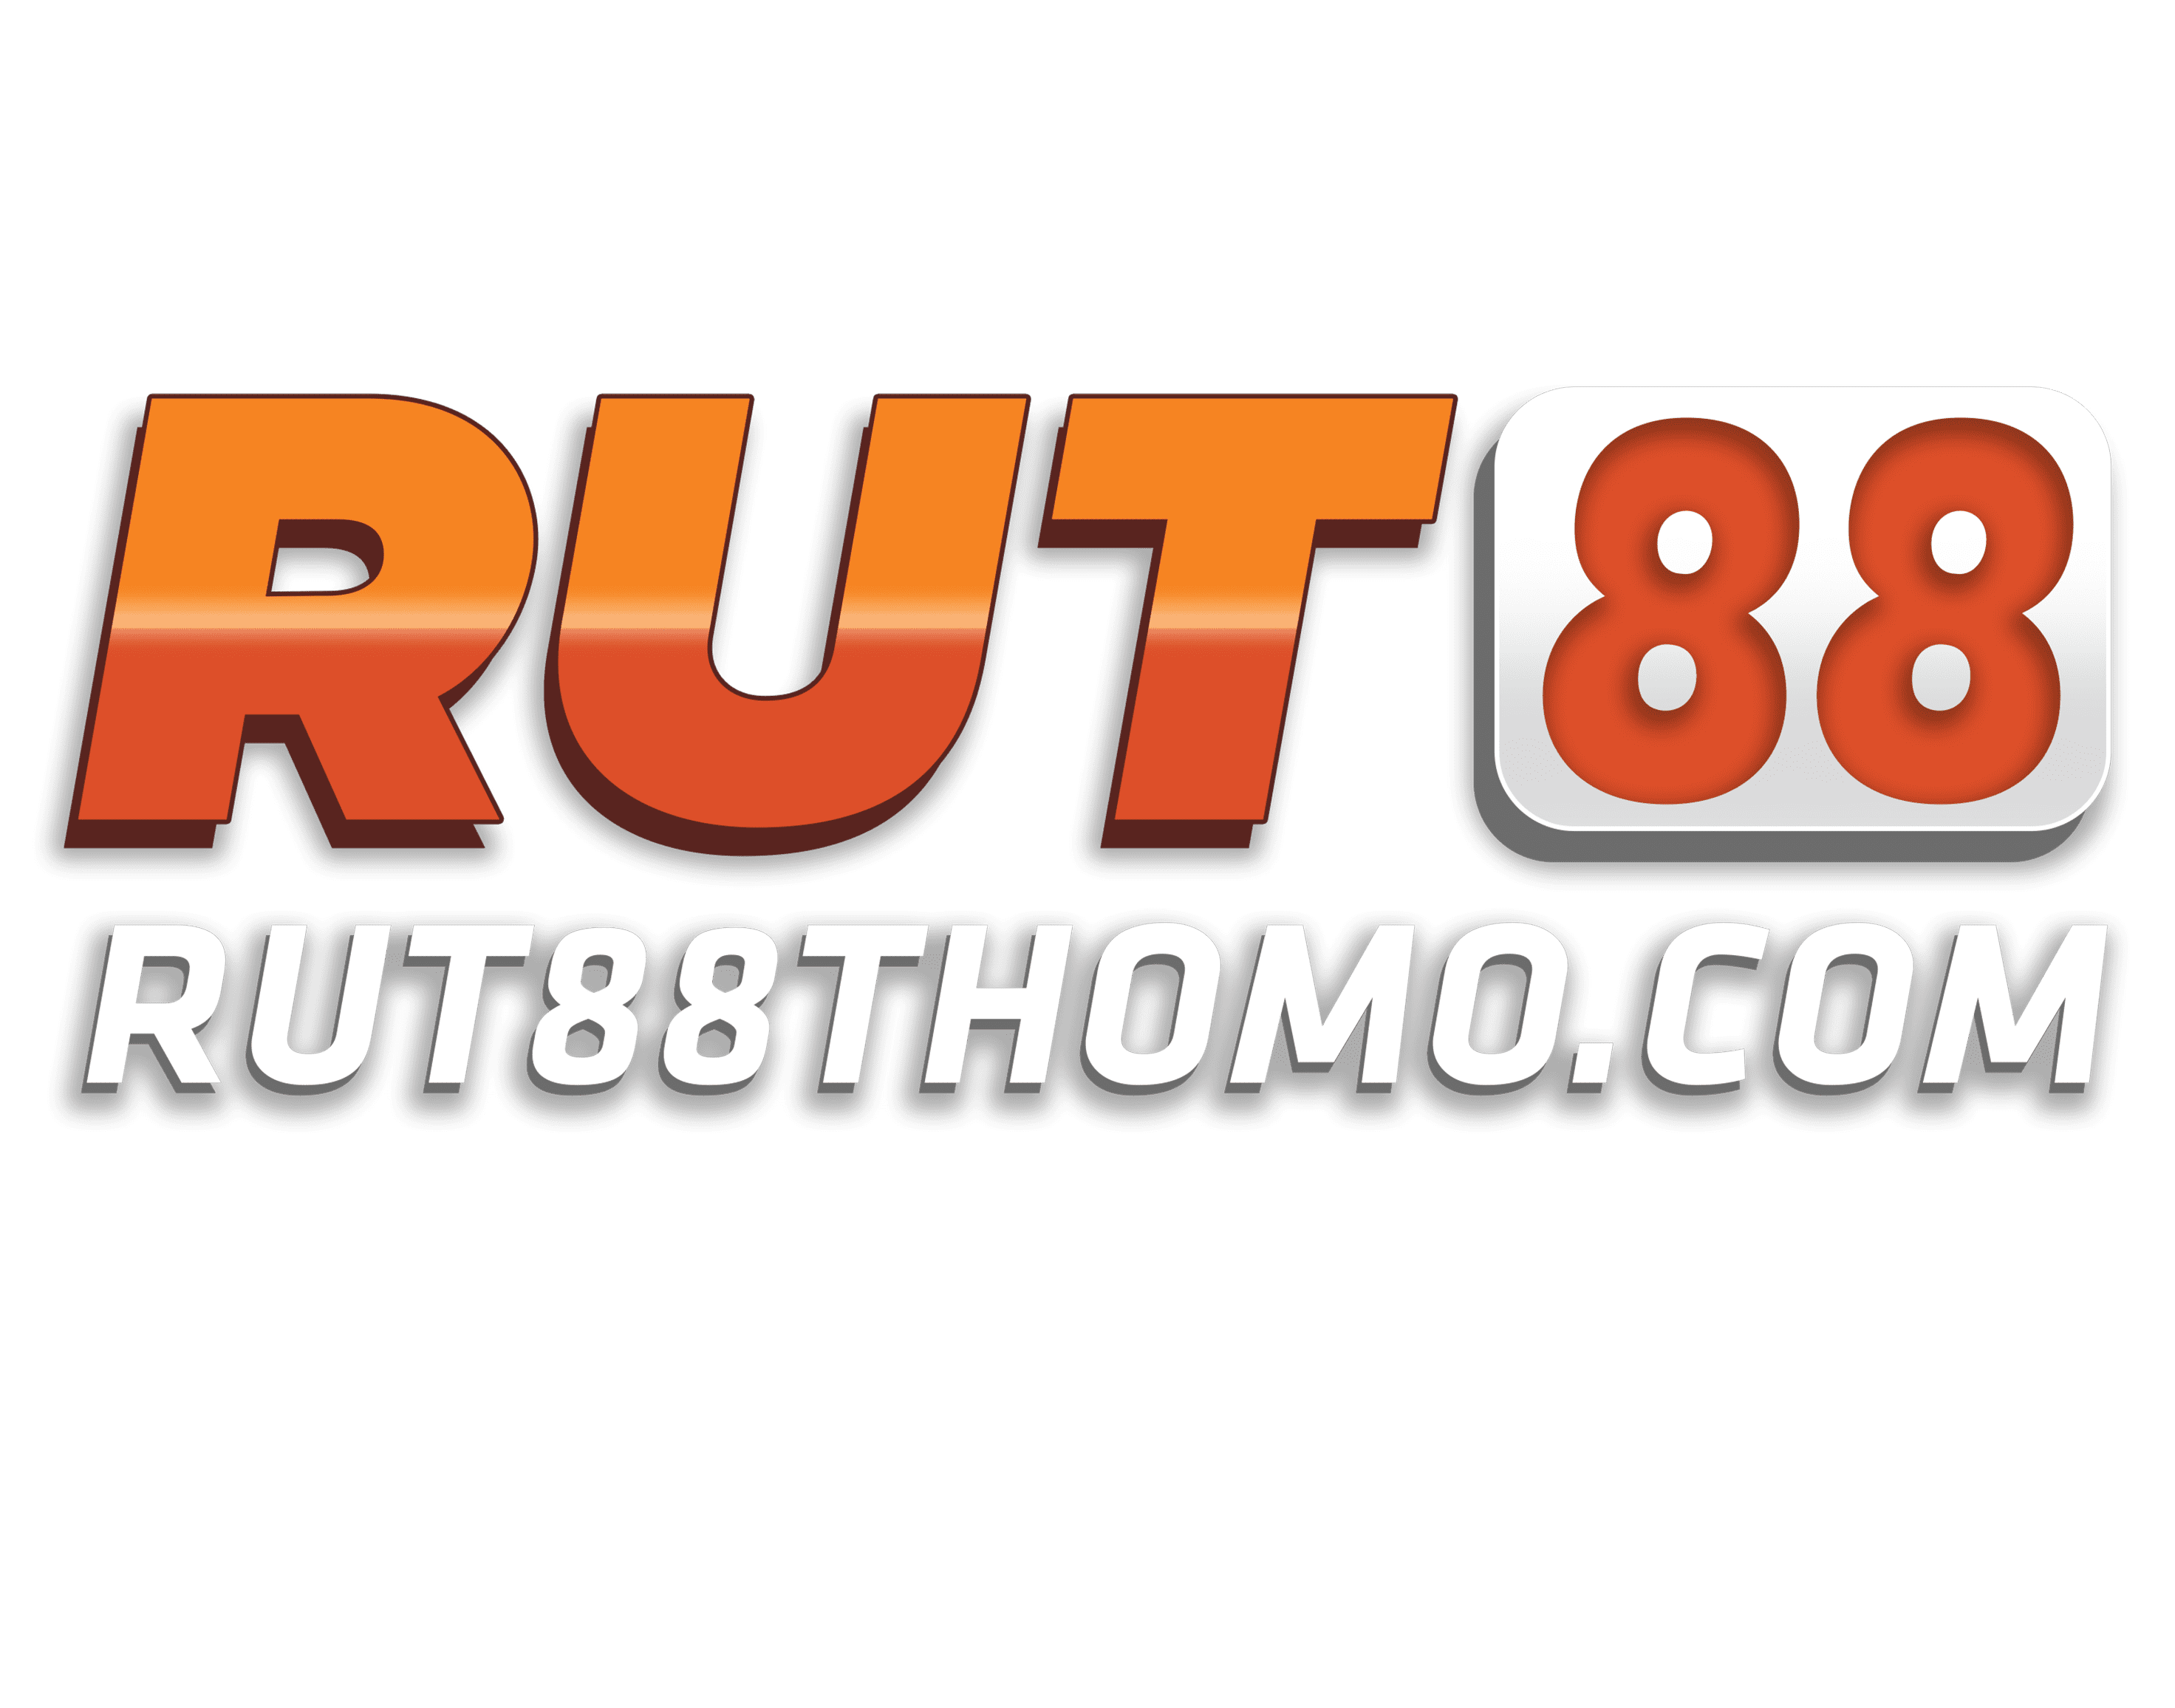 rut88thomo.com